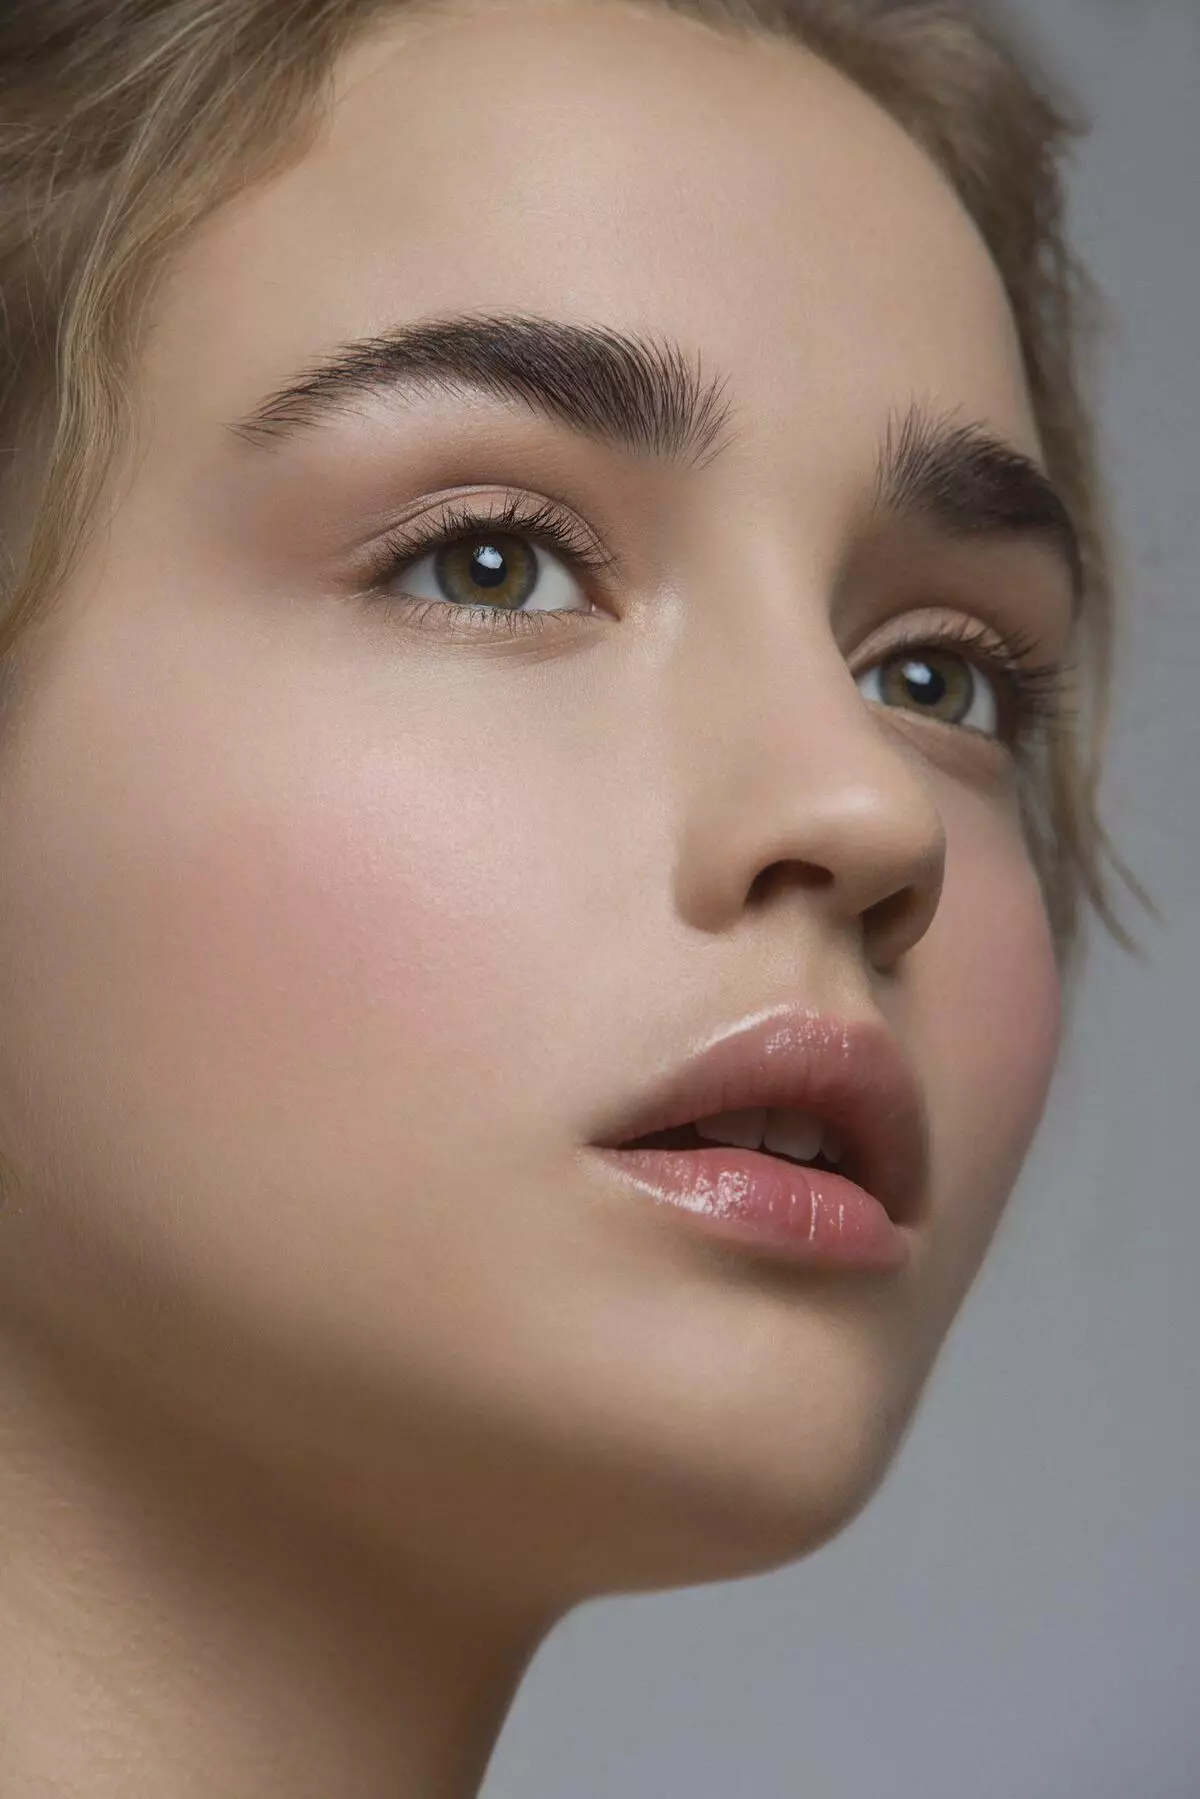 Make-up op 13 jaar oud: een eenvoudige versie van school voor tienermeisjes en verjaardag. Is het mogelijk om te schilderen? Gestapte make-up voor elke dag 23952_40